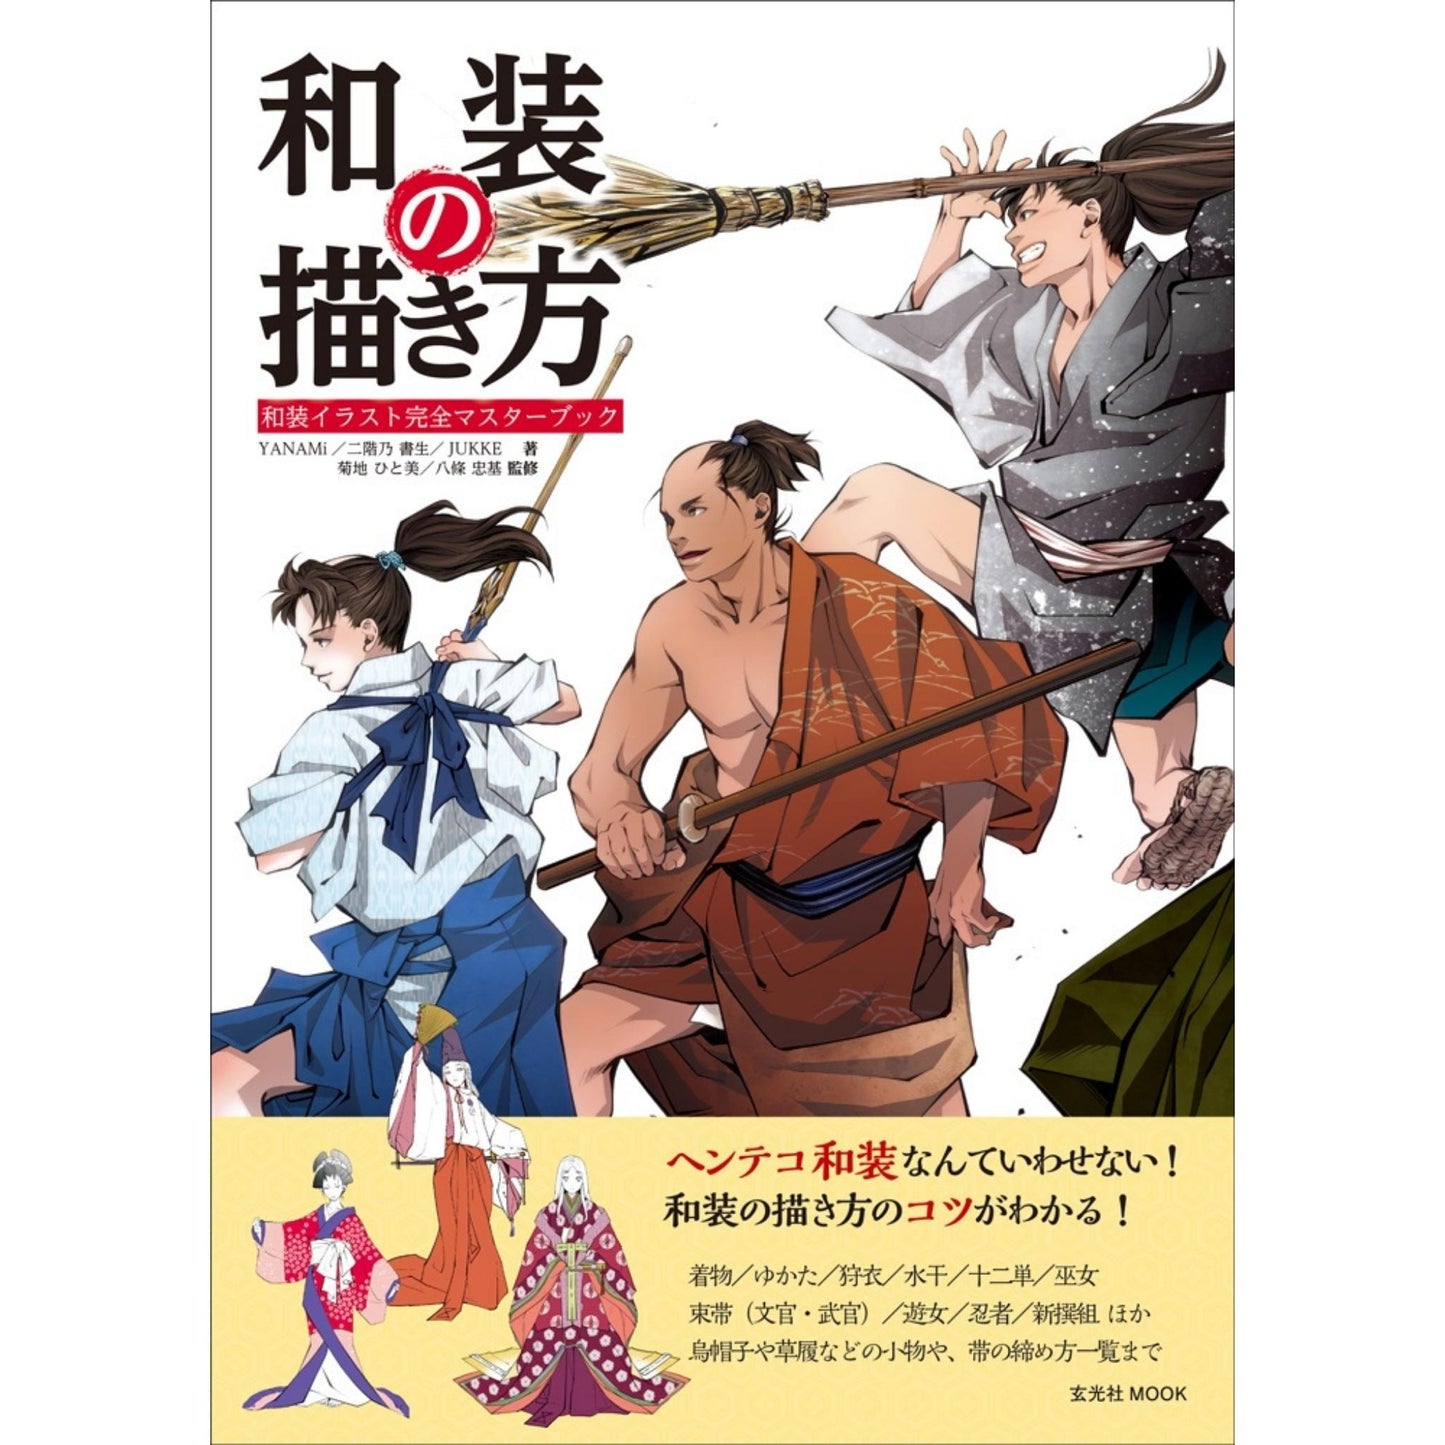 How to draw - jap. Zeichenbuch - japanische trad. Kleidung